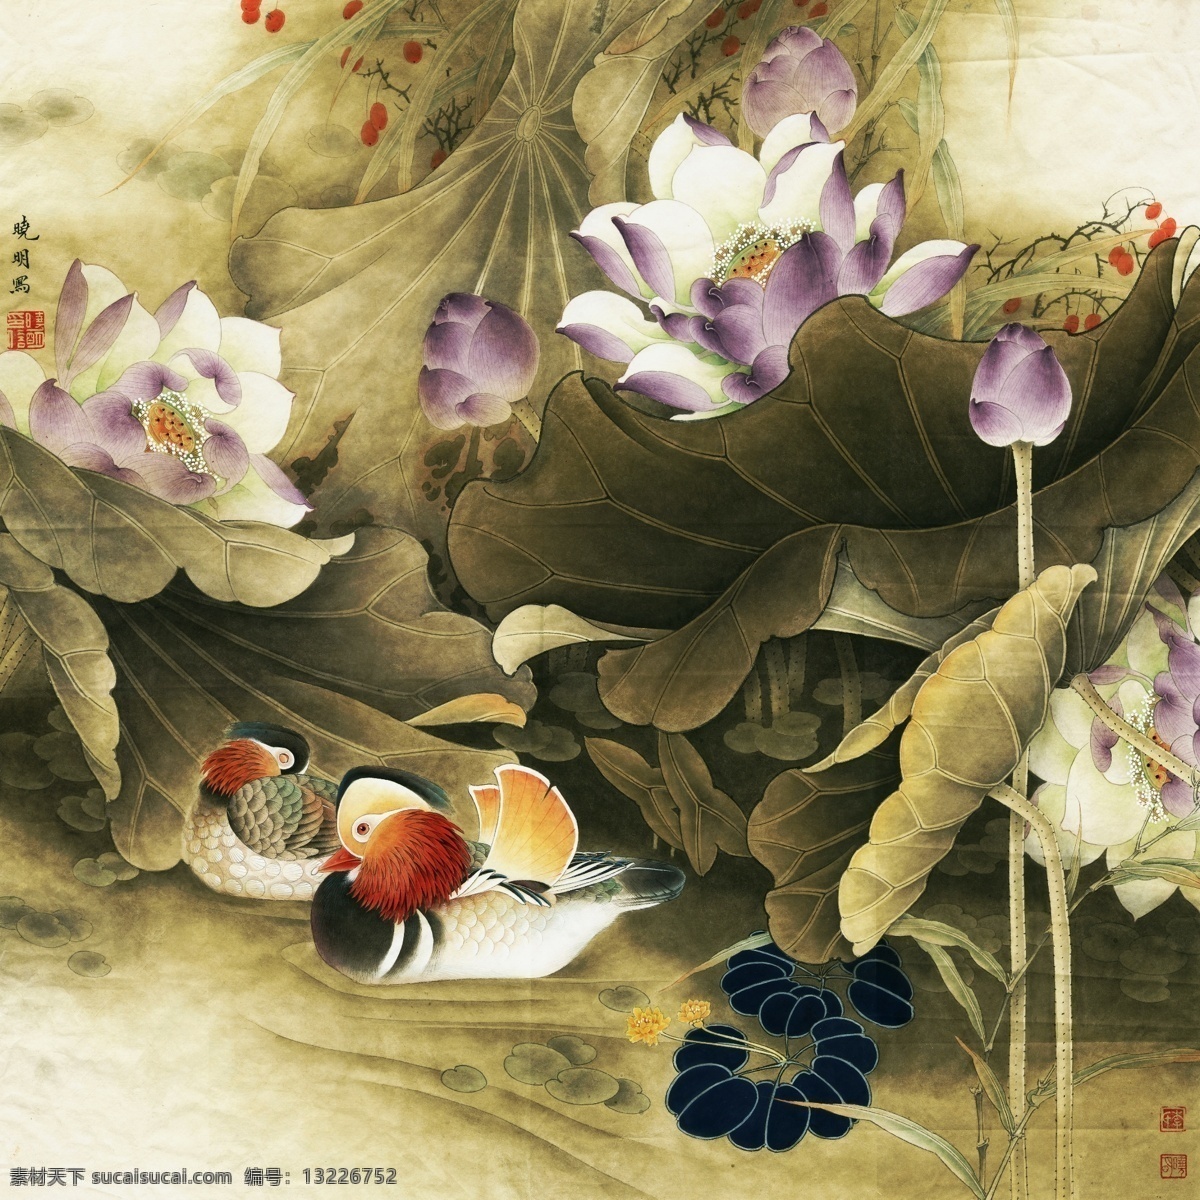 中式 古典 花鸟 工笔画 中国风绘画 精美绘画 植物花鸟 装饰画 古典画 牡丹花朵 绿叶 繁花蝴蝶 荷叶荷花 文化艺术 绘画书法